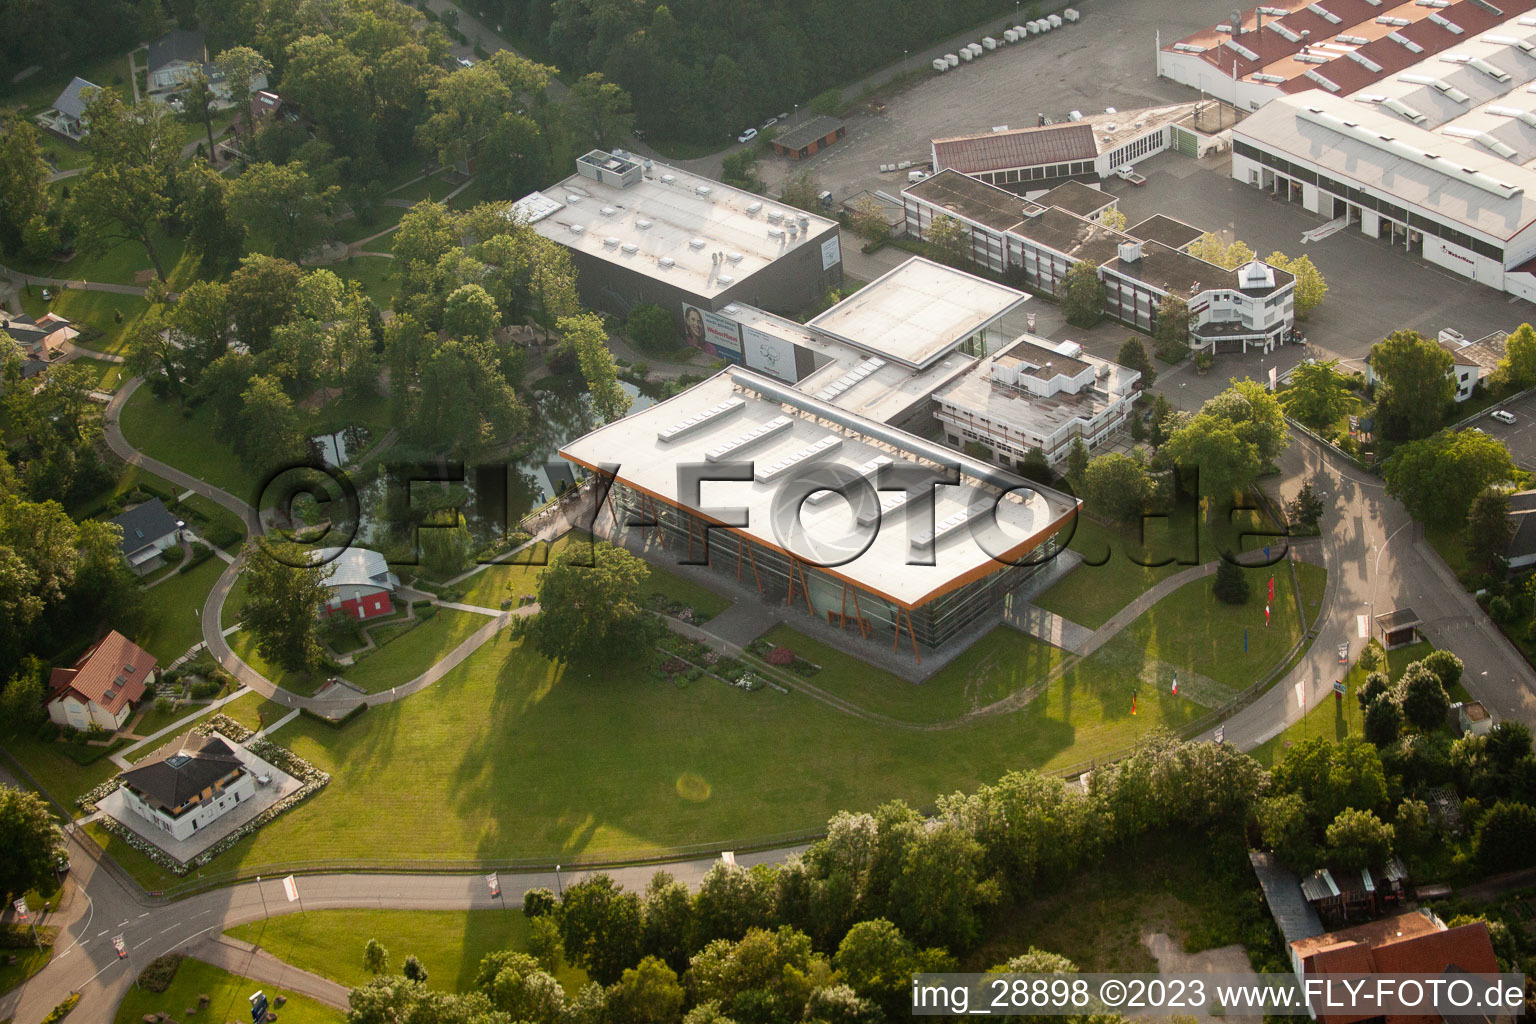 Aerial view of Weberhaus in the district Linx in Rheinau in the state Baden-Wuerttemberg, Germany